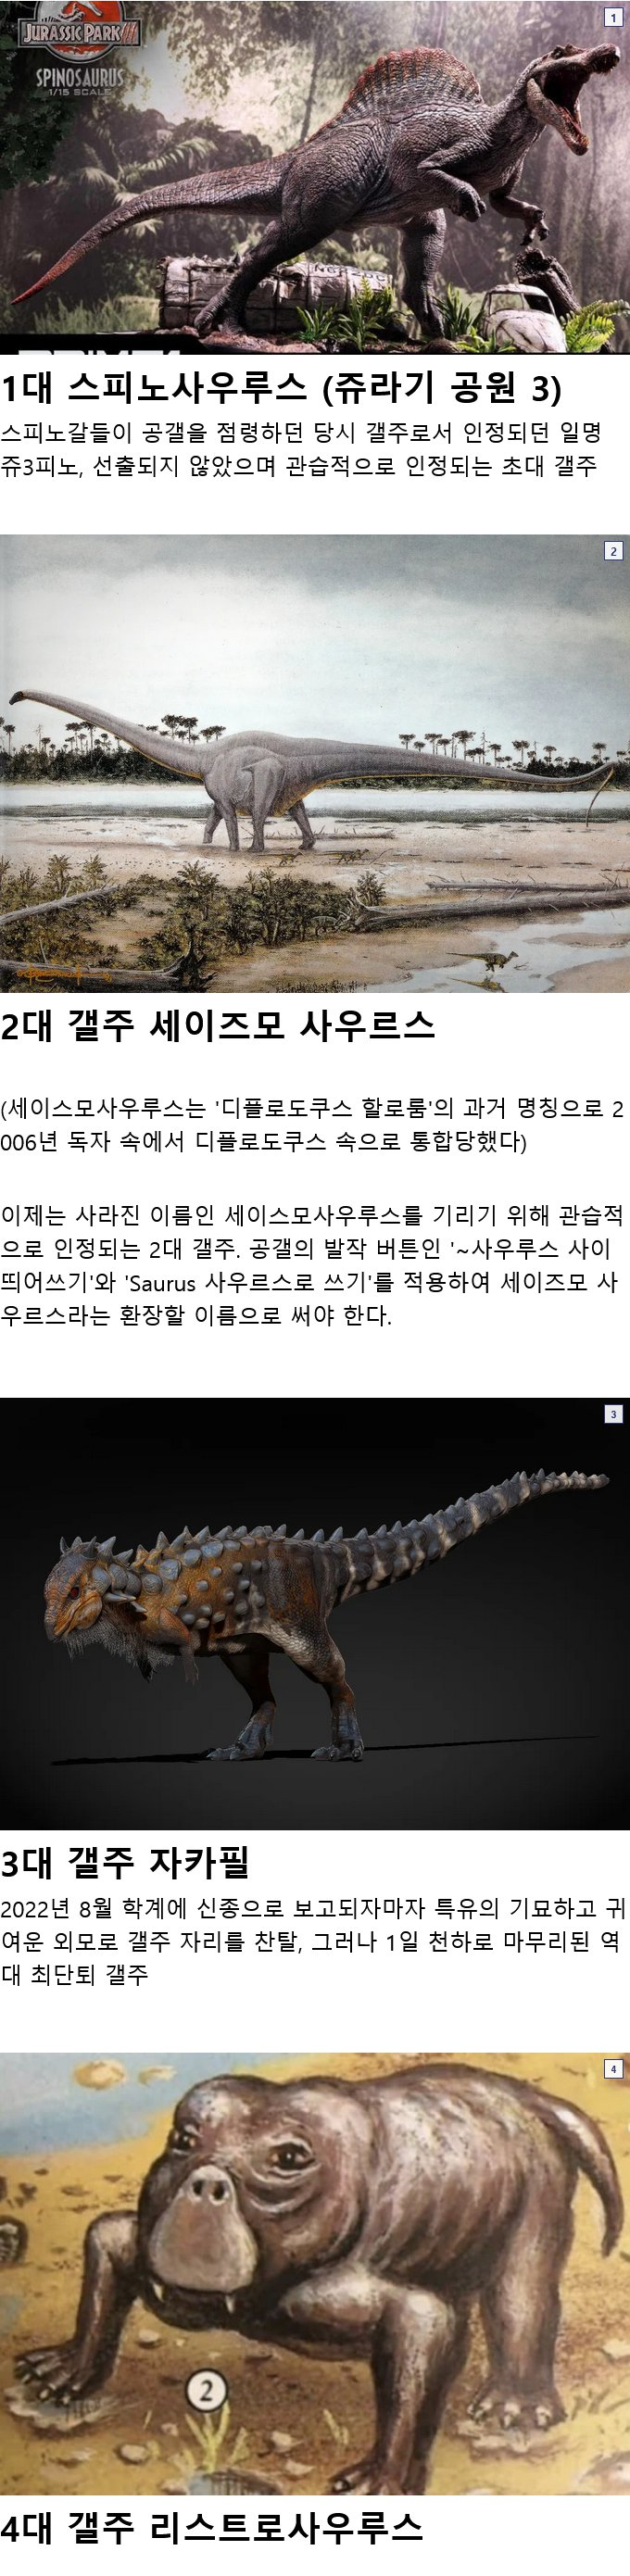 恐竜マイナーギャラリー歴代のギャルジュたち